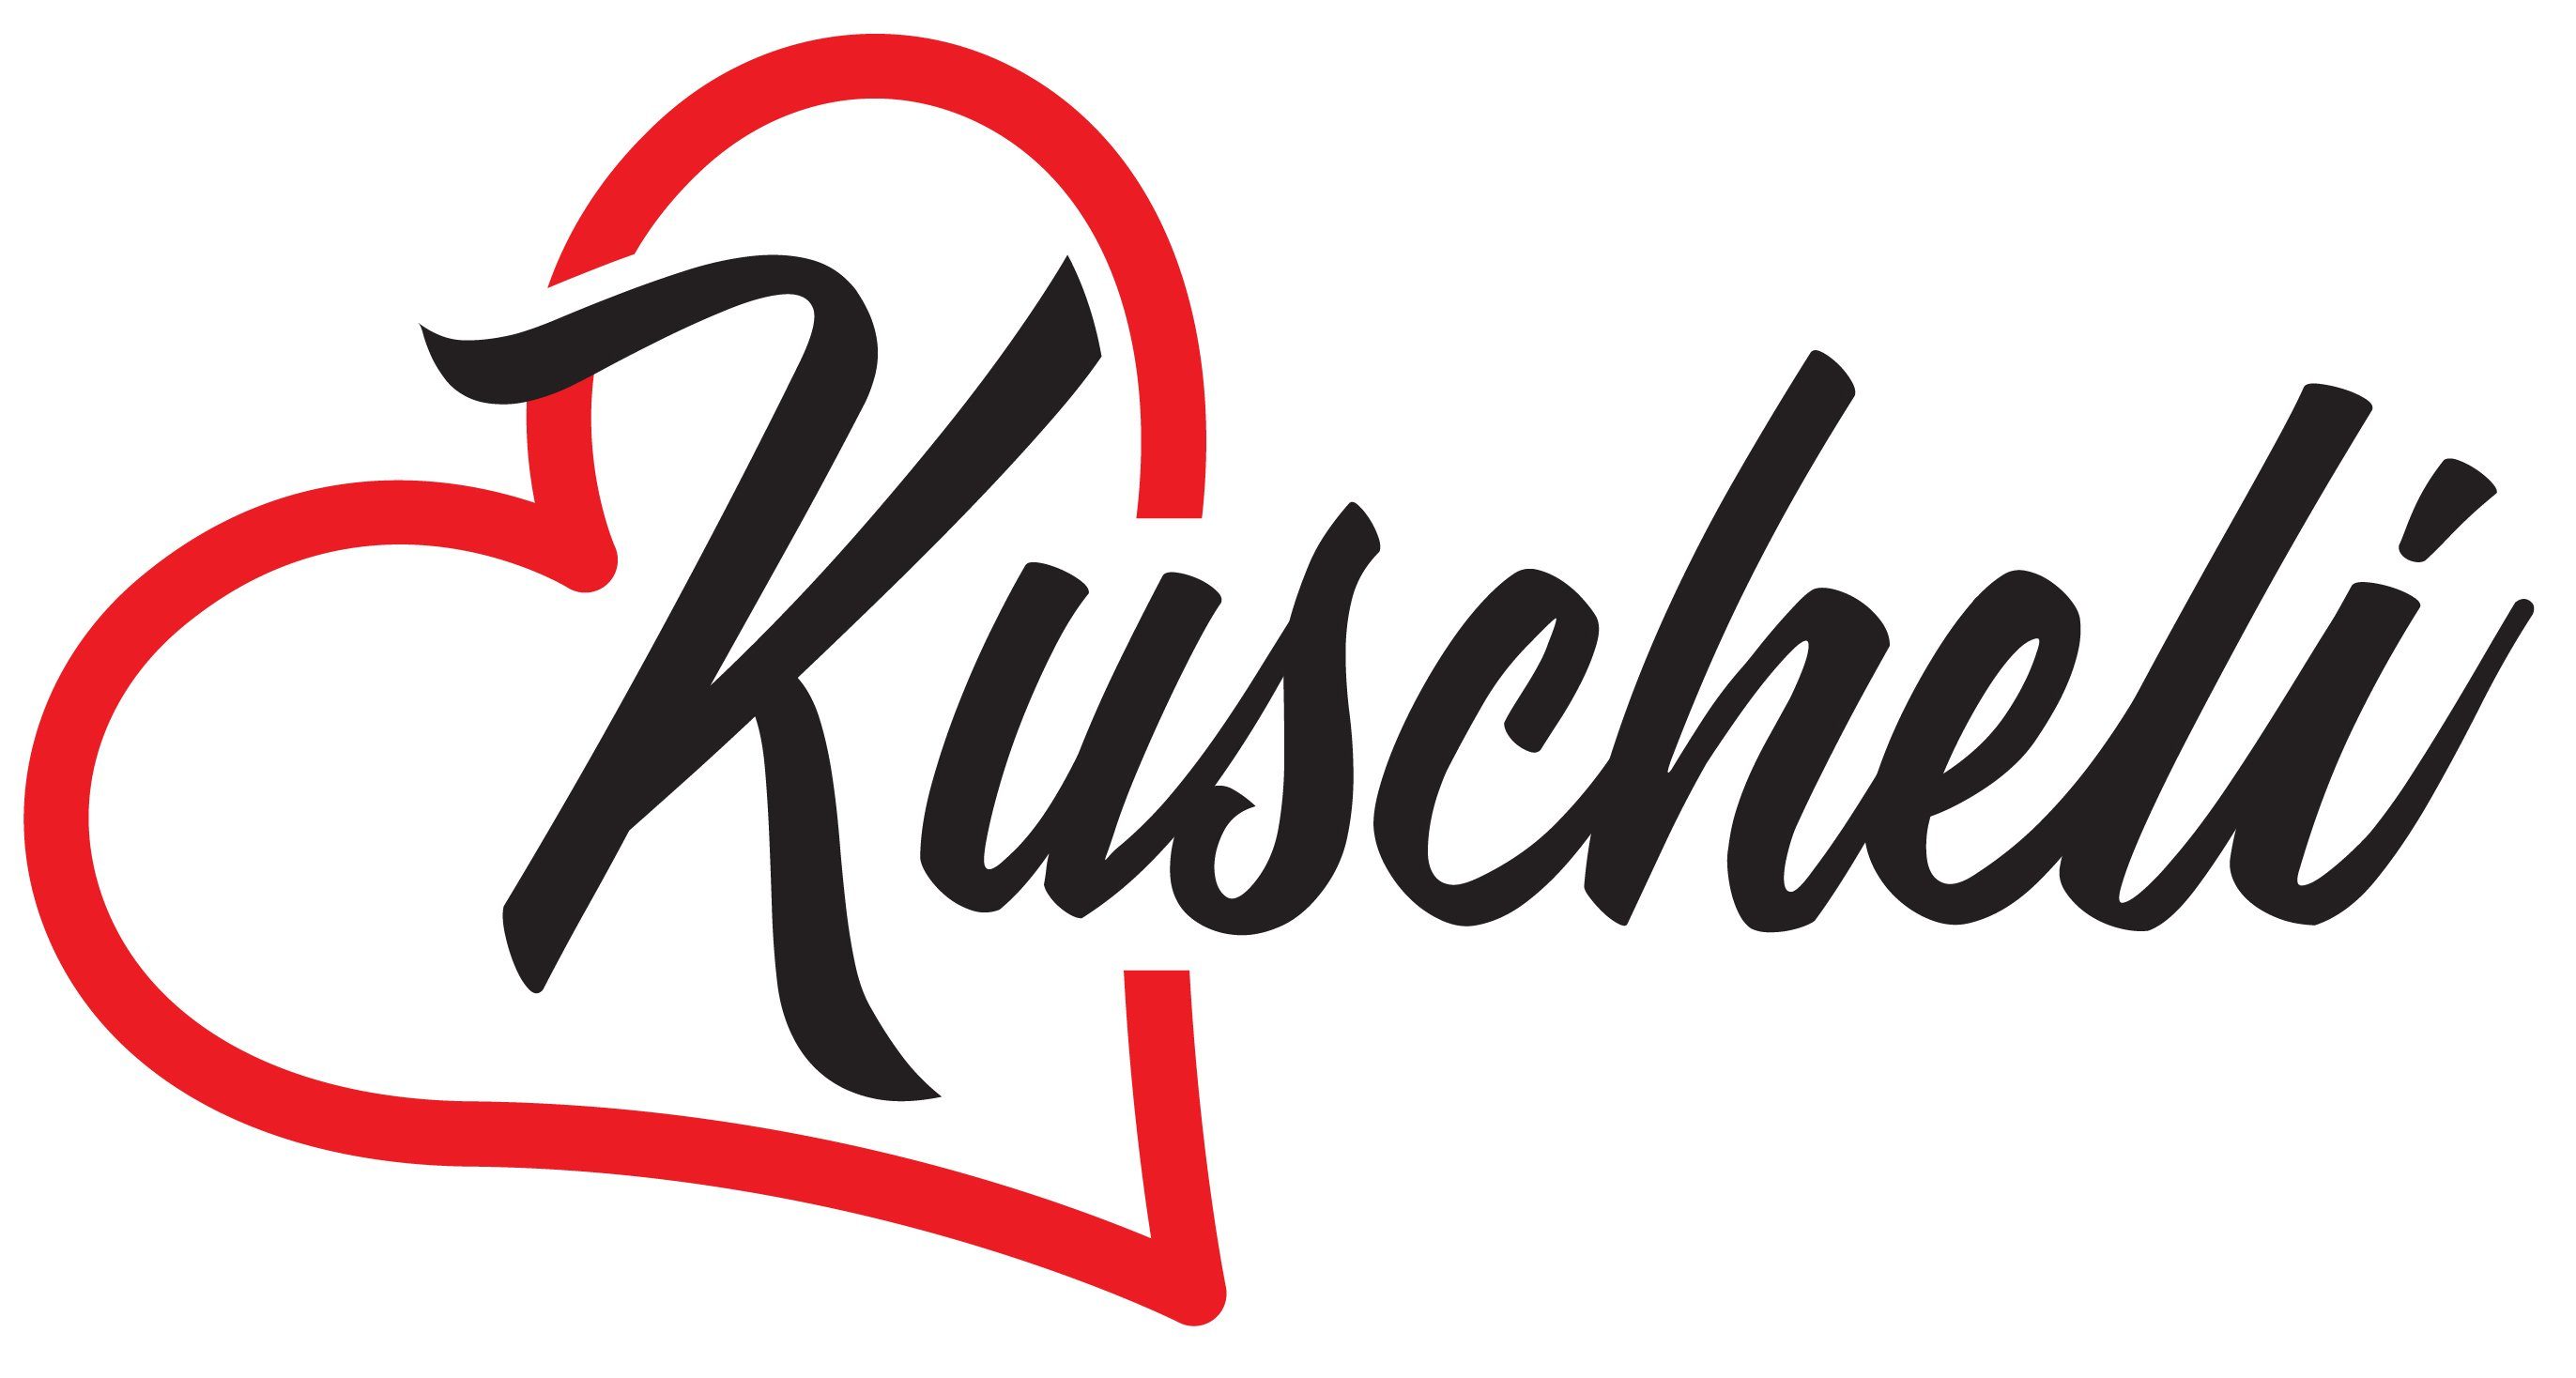 Kuscheli